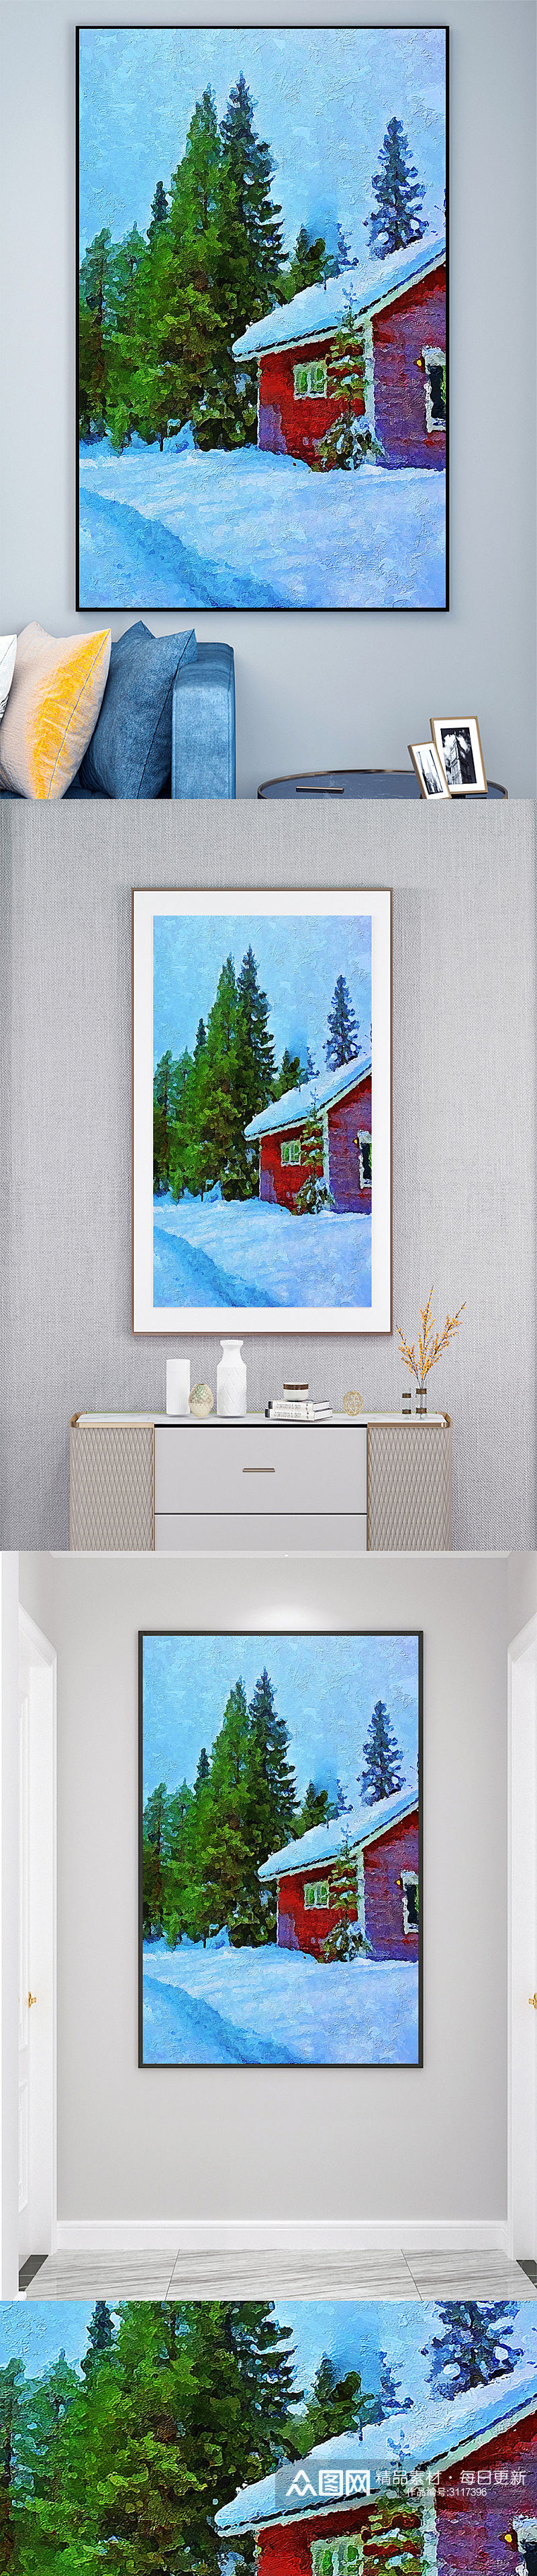 雪季小屋风景壁画装饰画素材